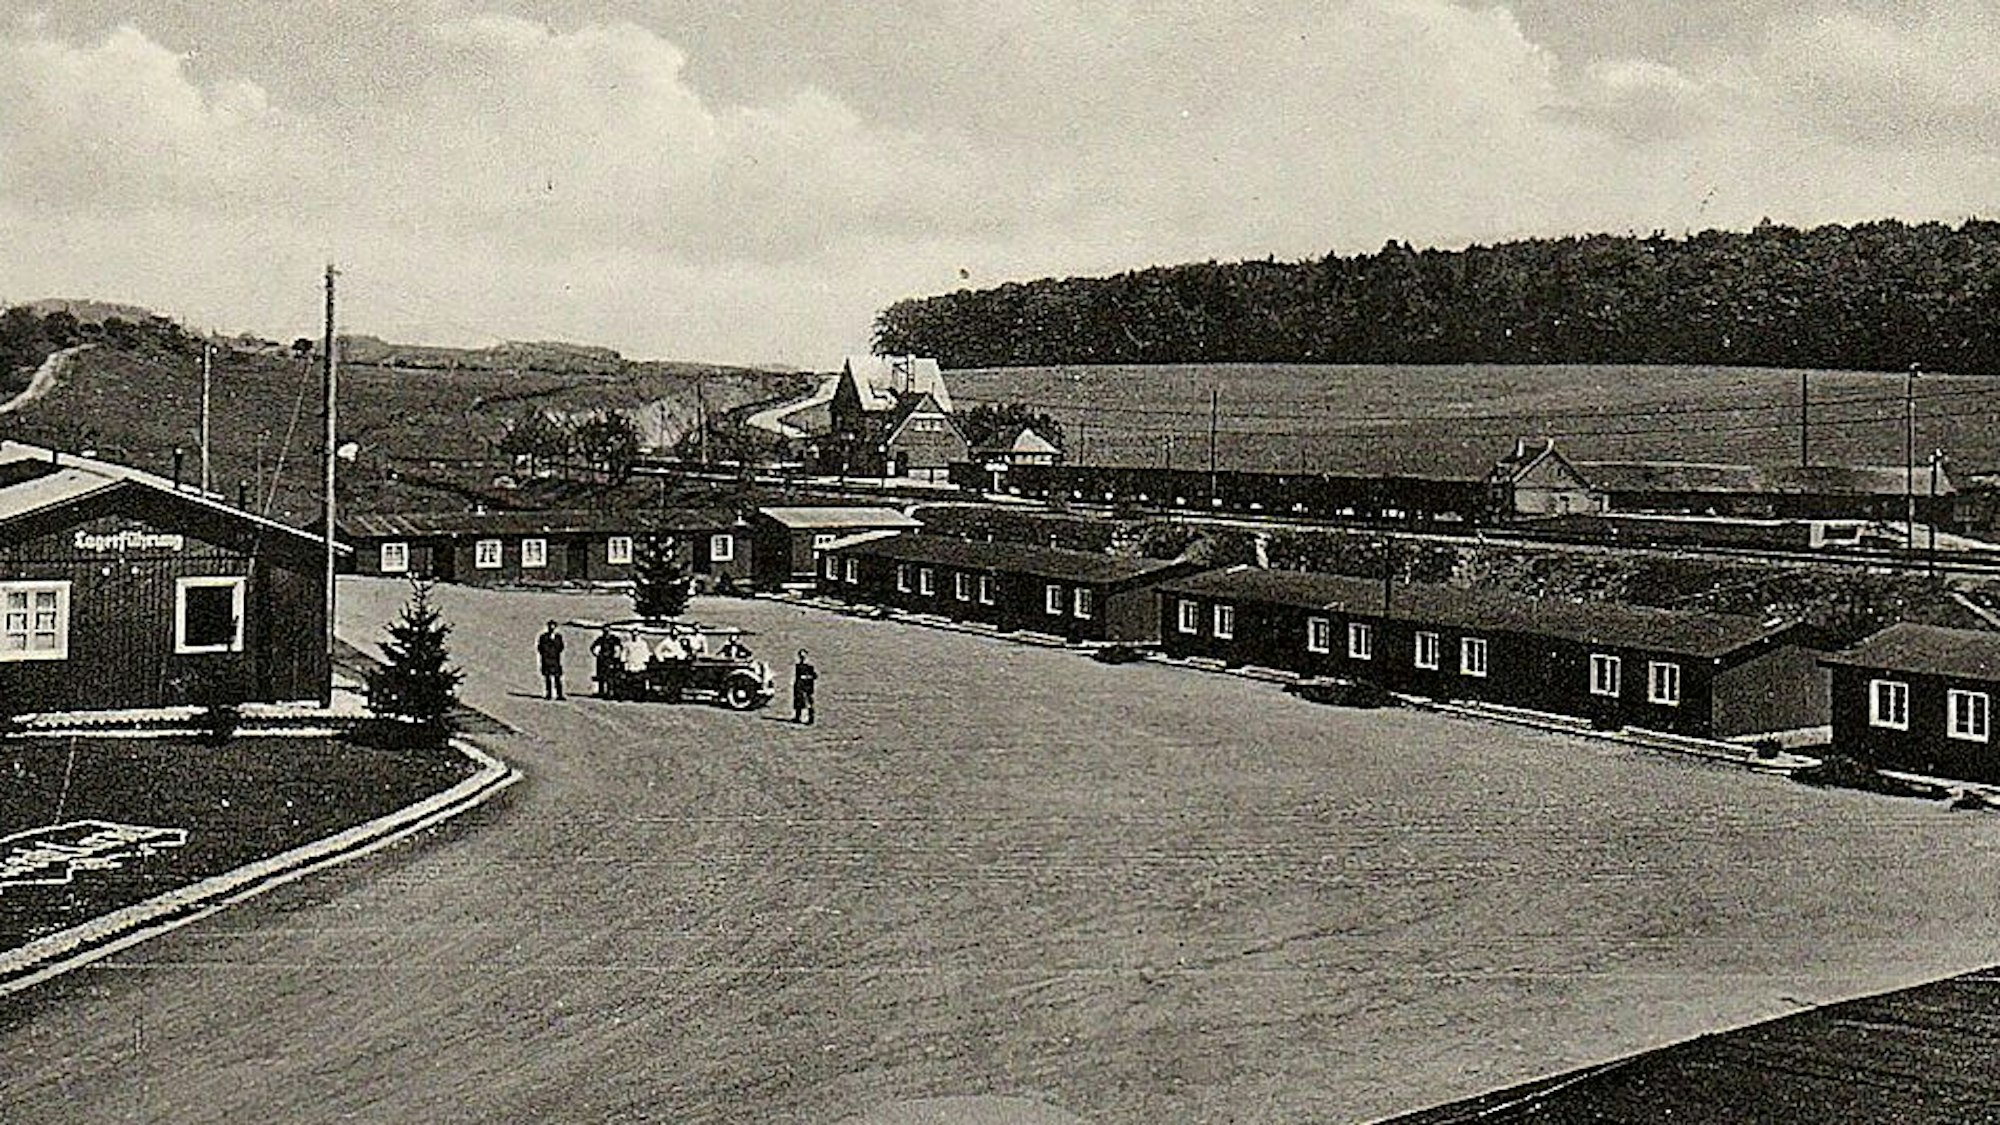 Das Bild zeigt eine Postkarte in schwarz-weiß. Darauf das einstige Reichsarbeitsdienstlager am Bahnhof in Blankenheim.